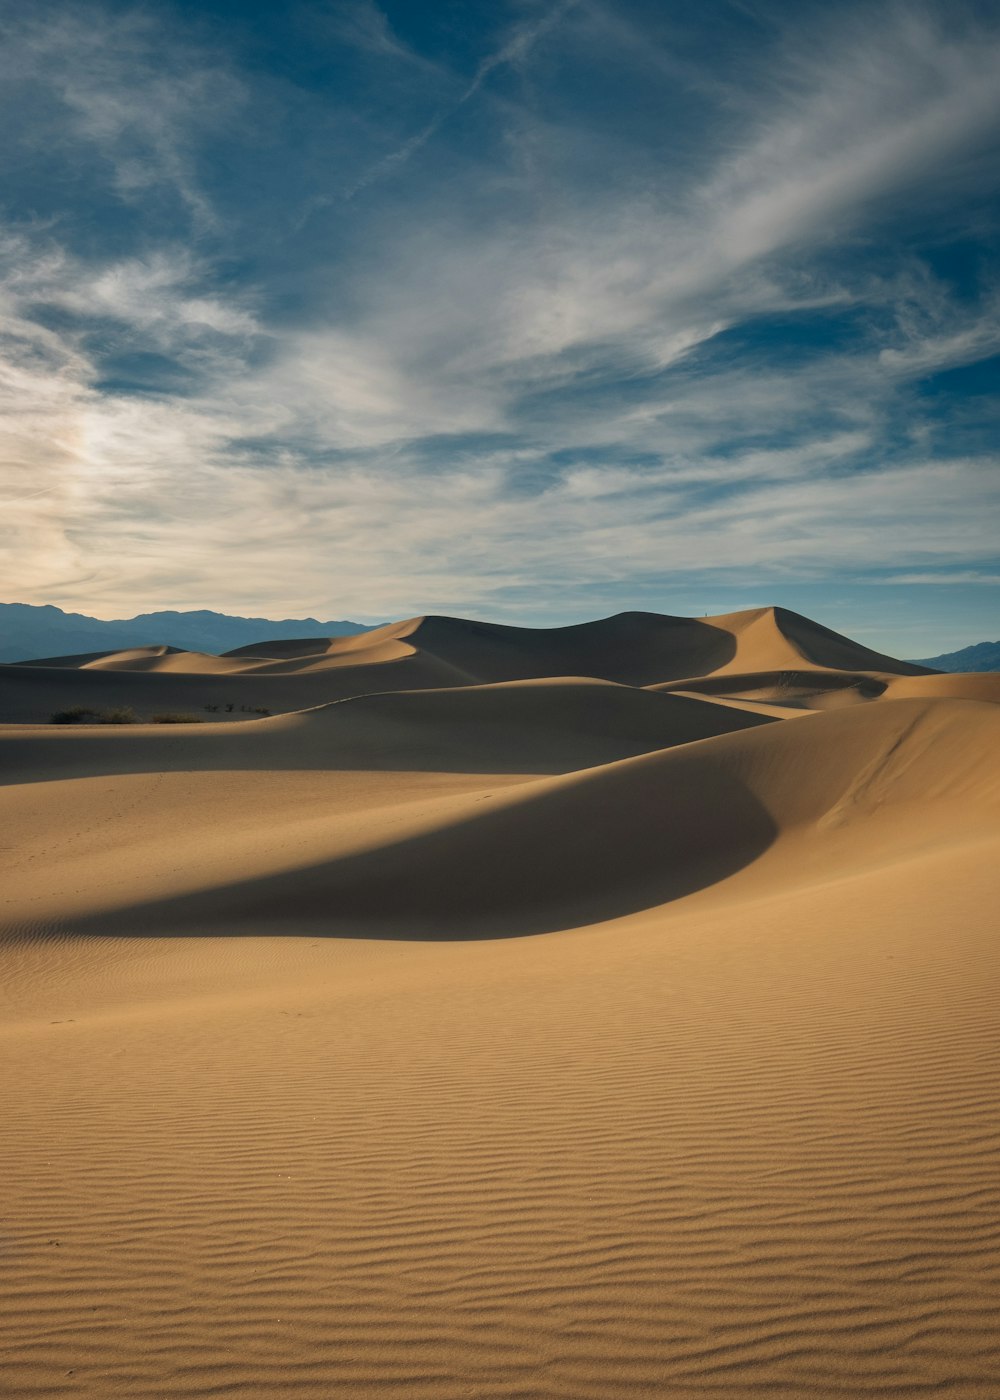 500+ Desert Landscape Pictures [HD] | Download Free Images on Unsplash